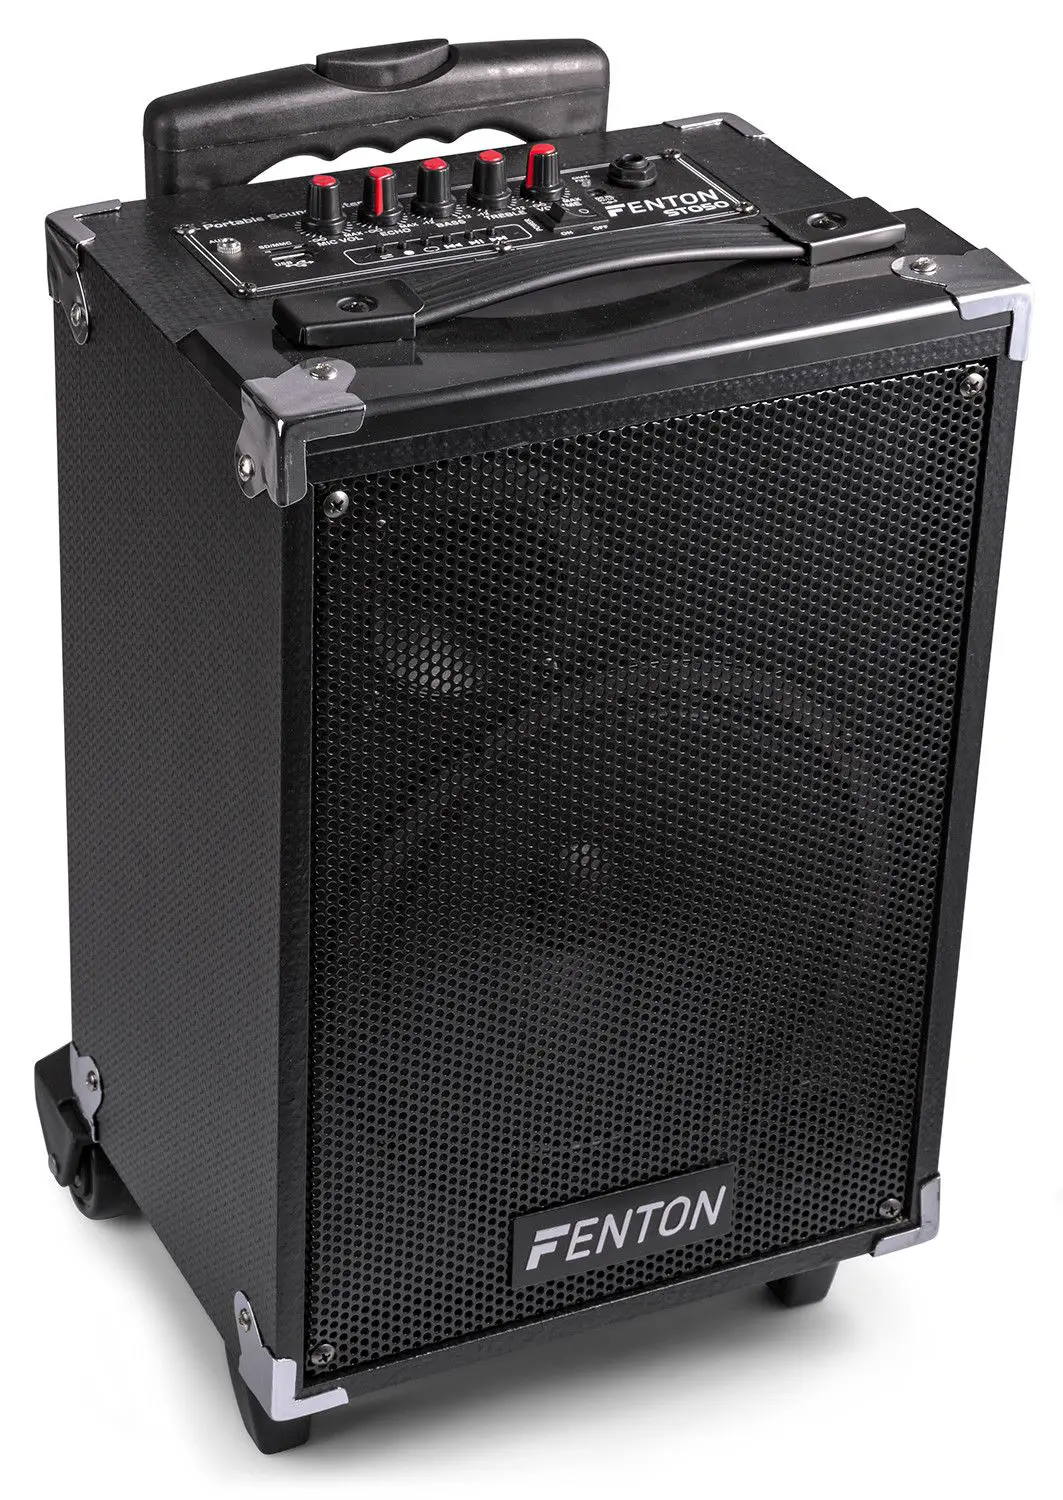 Fenton st050 mobiele geluidsinstallatie met bluetooth en draadloze vhf 2